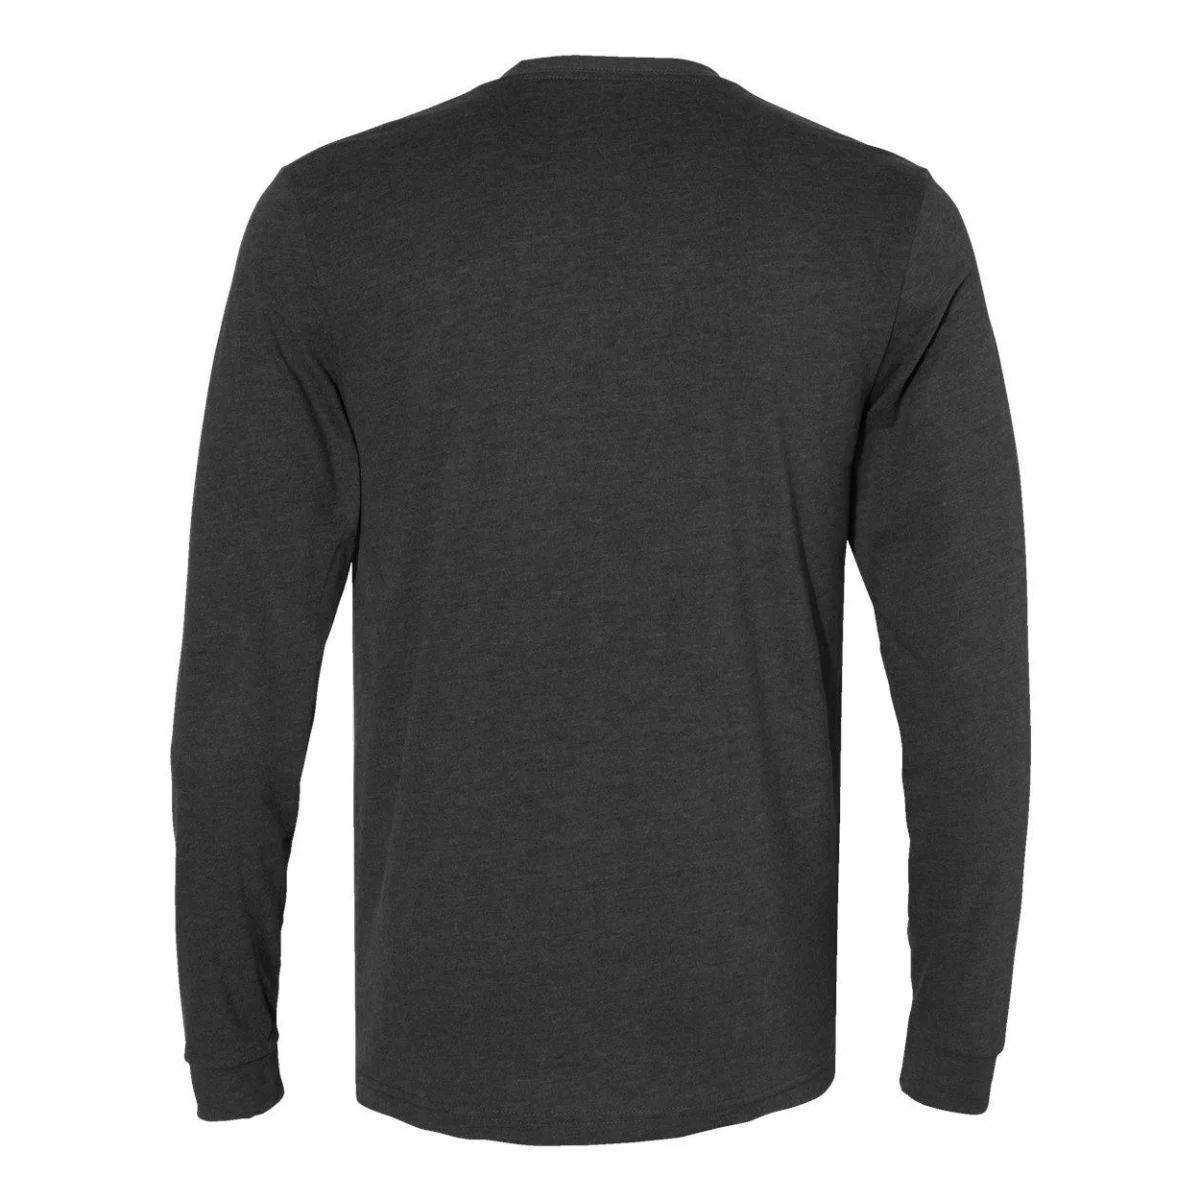 Замшевая футболка унисекс с длинным рукавом Next Level кроссовки next duratrek dark grey